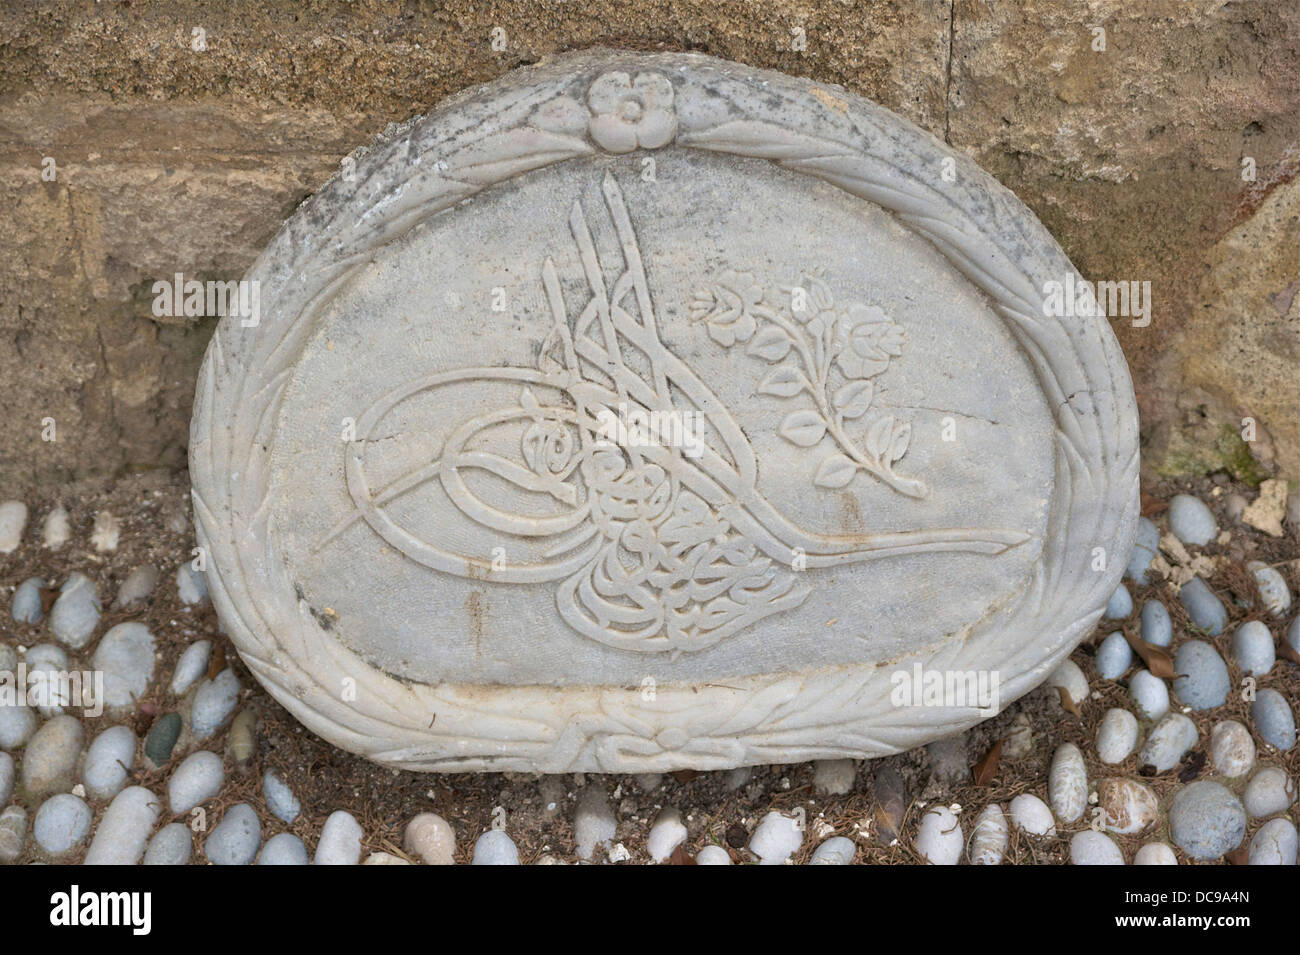 Lapide ottomano con iscrizioni e incisa una rosa. Foto Stock